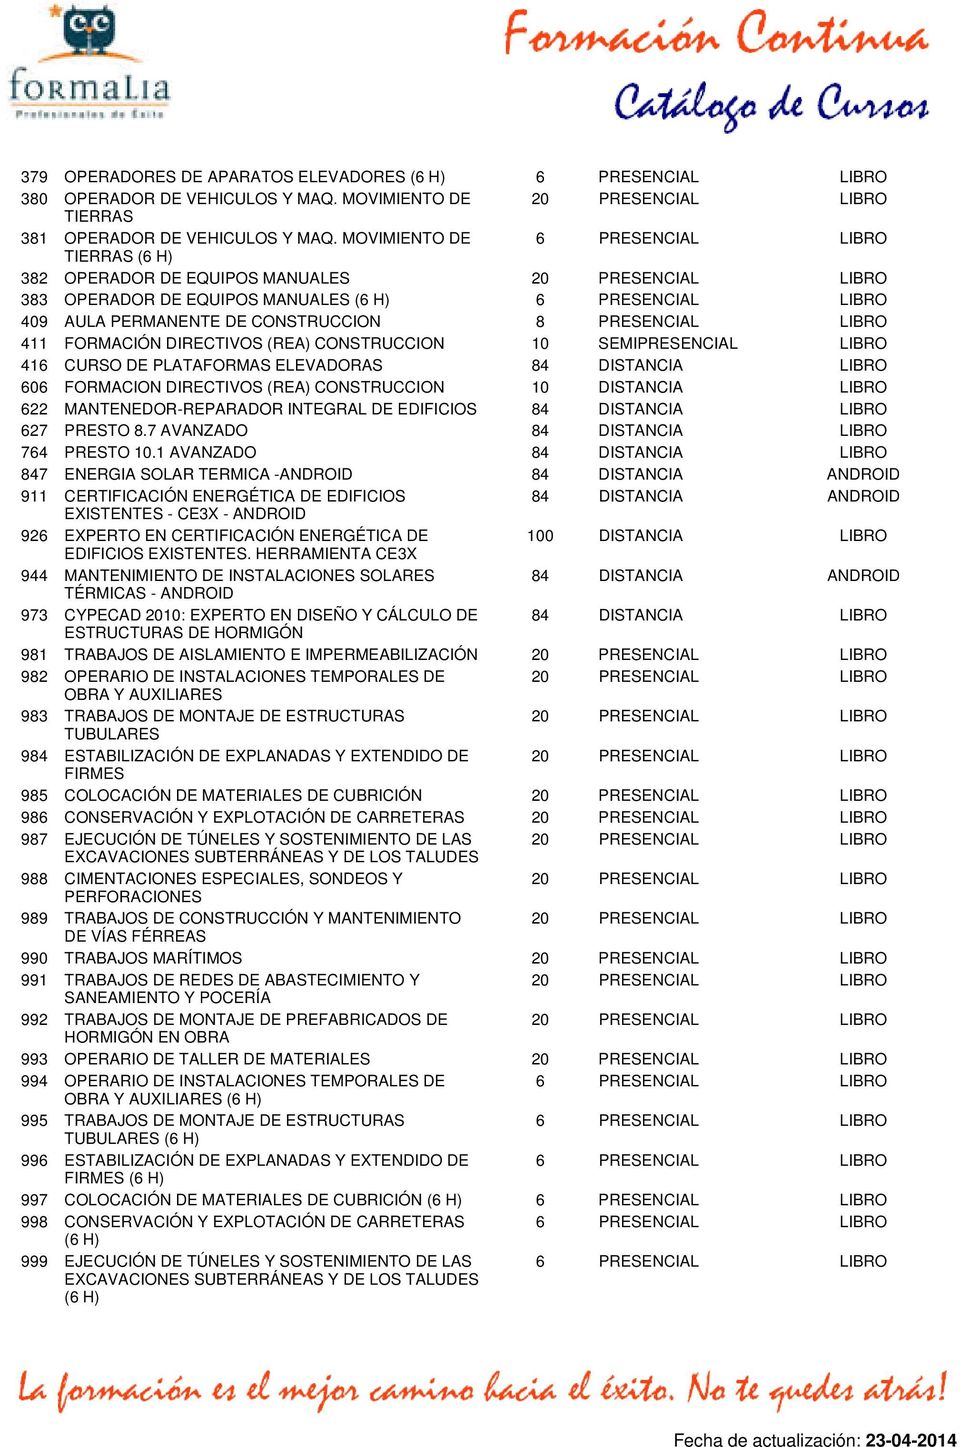 10 SEMIPRESENCIAL LIBRO 416 CURSO DE PLATAFORMAS ELEVADORAS 606 FORMACION DIRECTIVOS (REA) CONSTRUCCION 10 DISTANCIA LIBRO 622 MANTENEDOR-REPARADOR INTEGRAL DE EDIFICIOS 627 PRESTO 8.